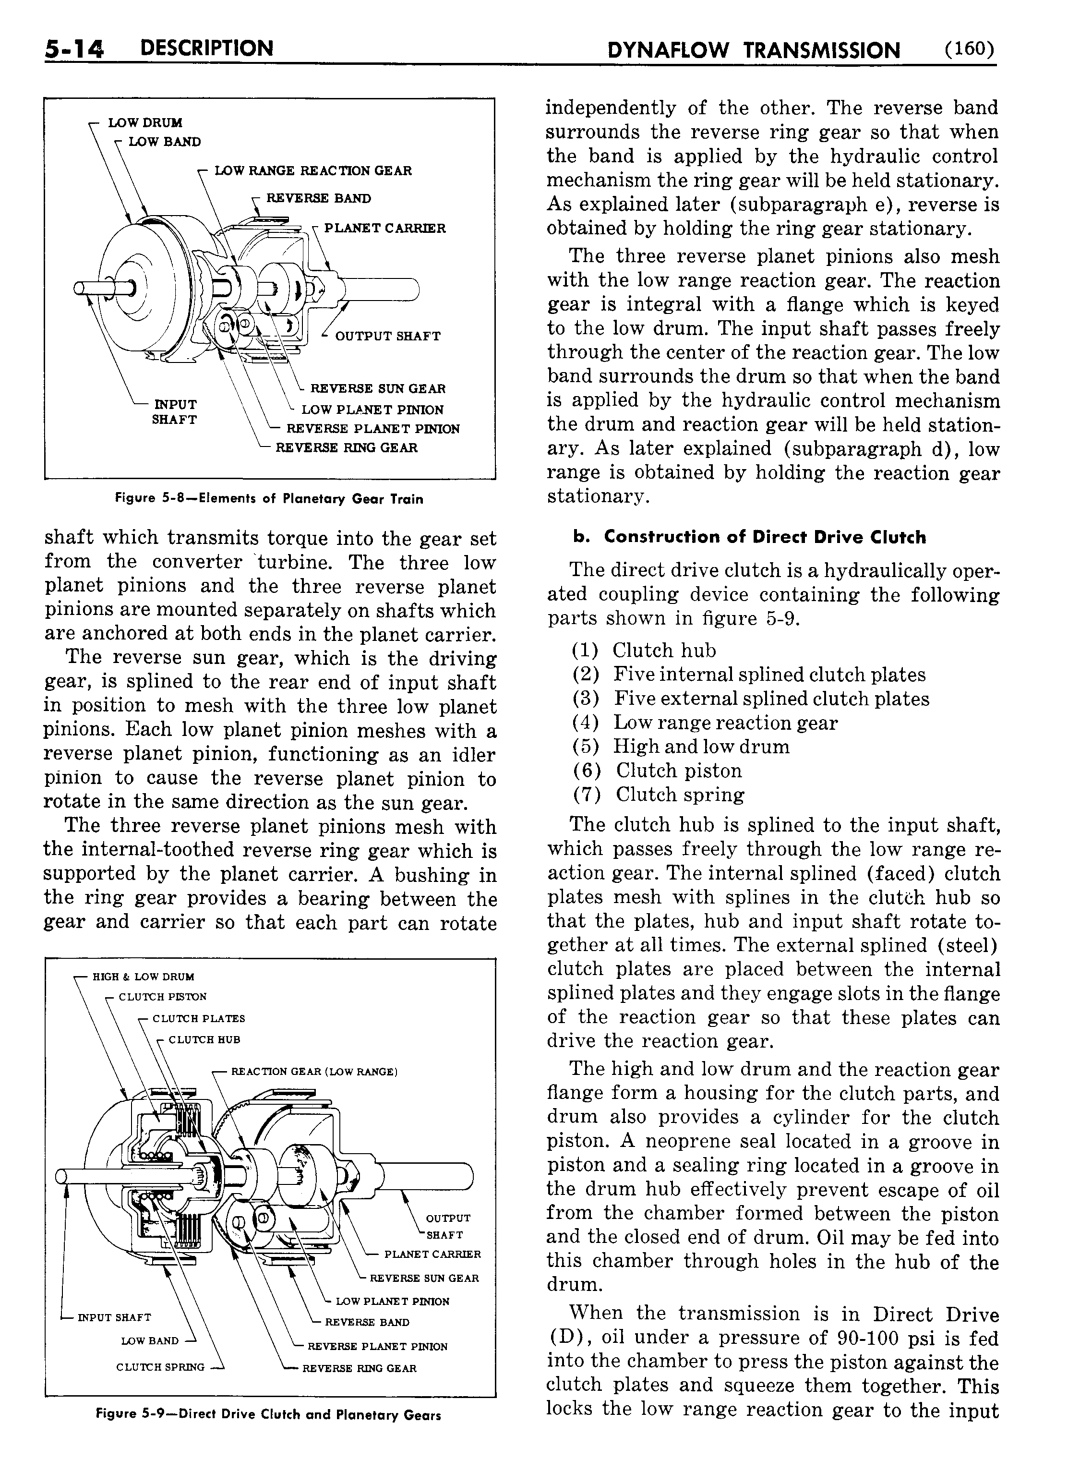 n_06 1956 Buick Shop Manual - Dynaflow-014-014.jpg